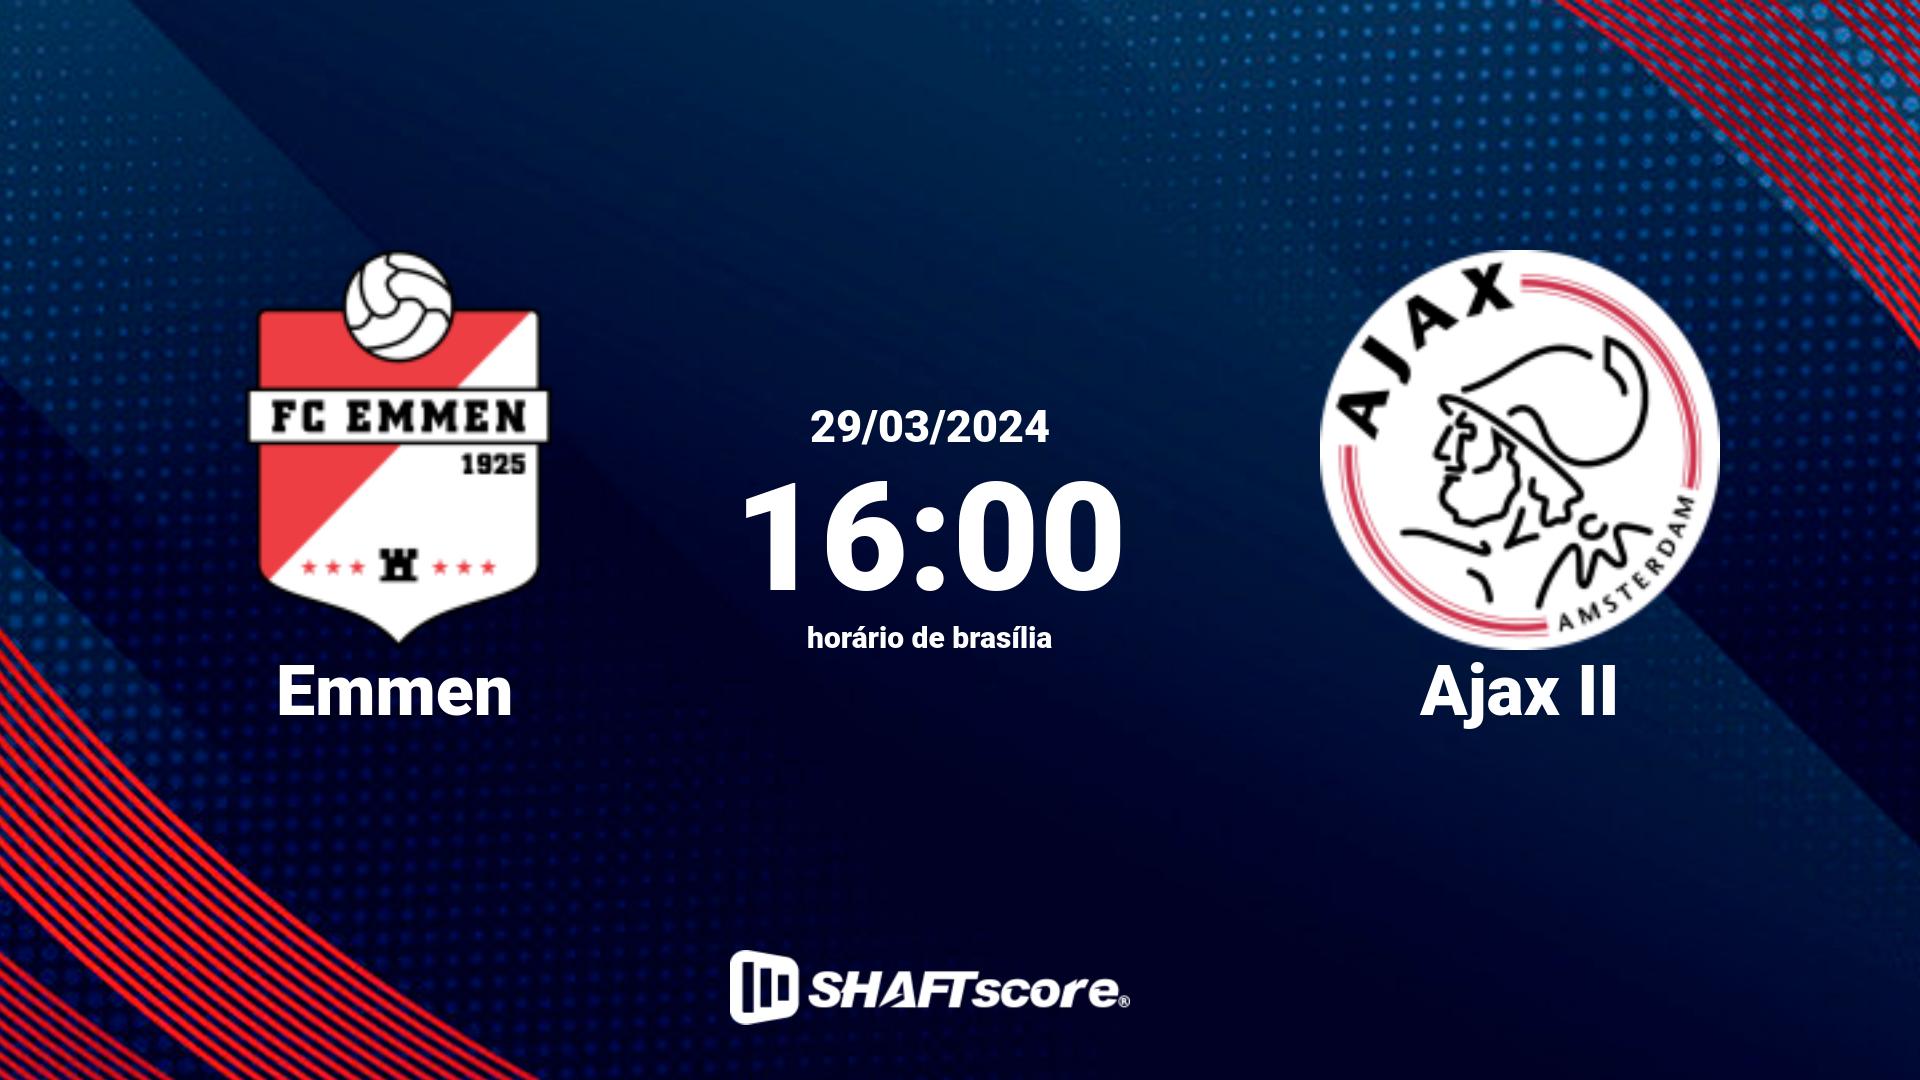 Estatísticas do jogo Emmen vs Ajax II 29.03 16:00